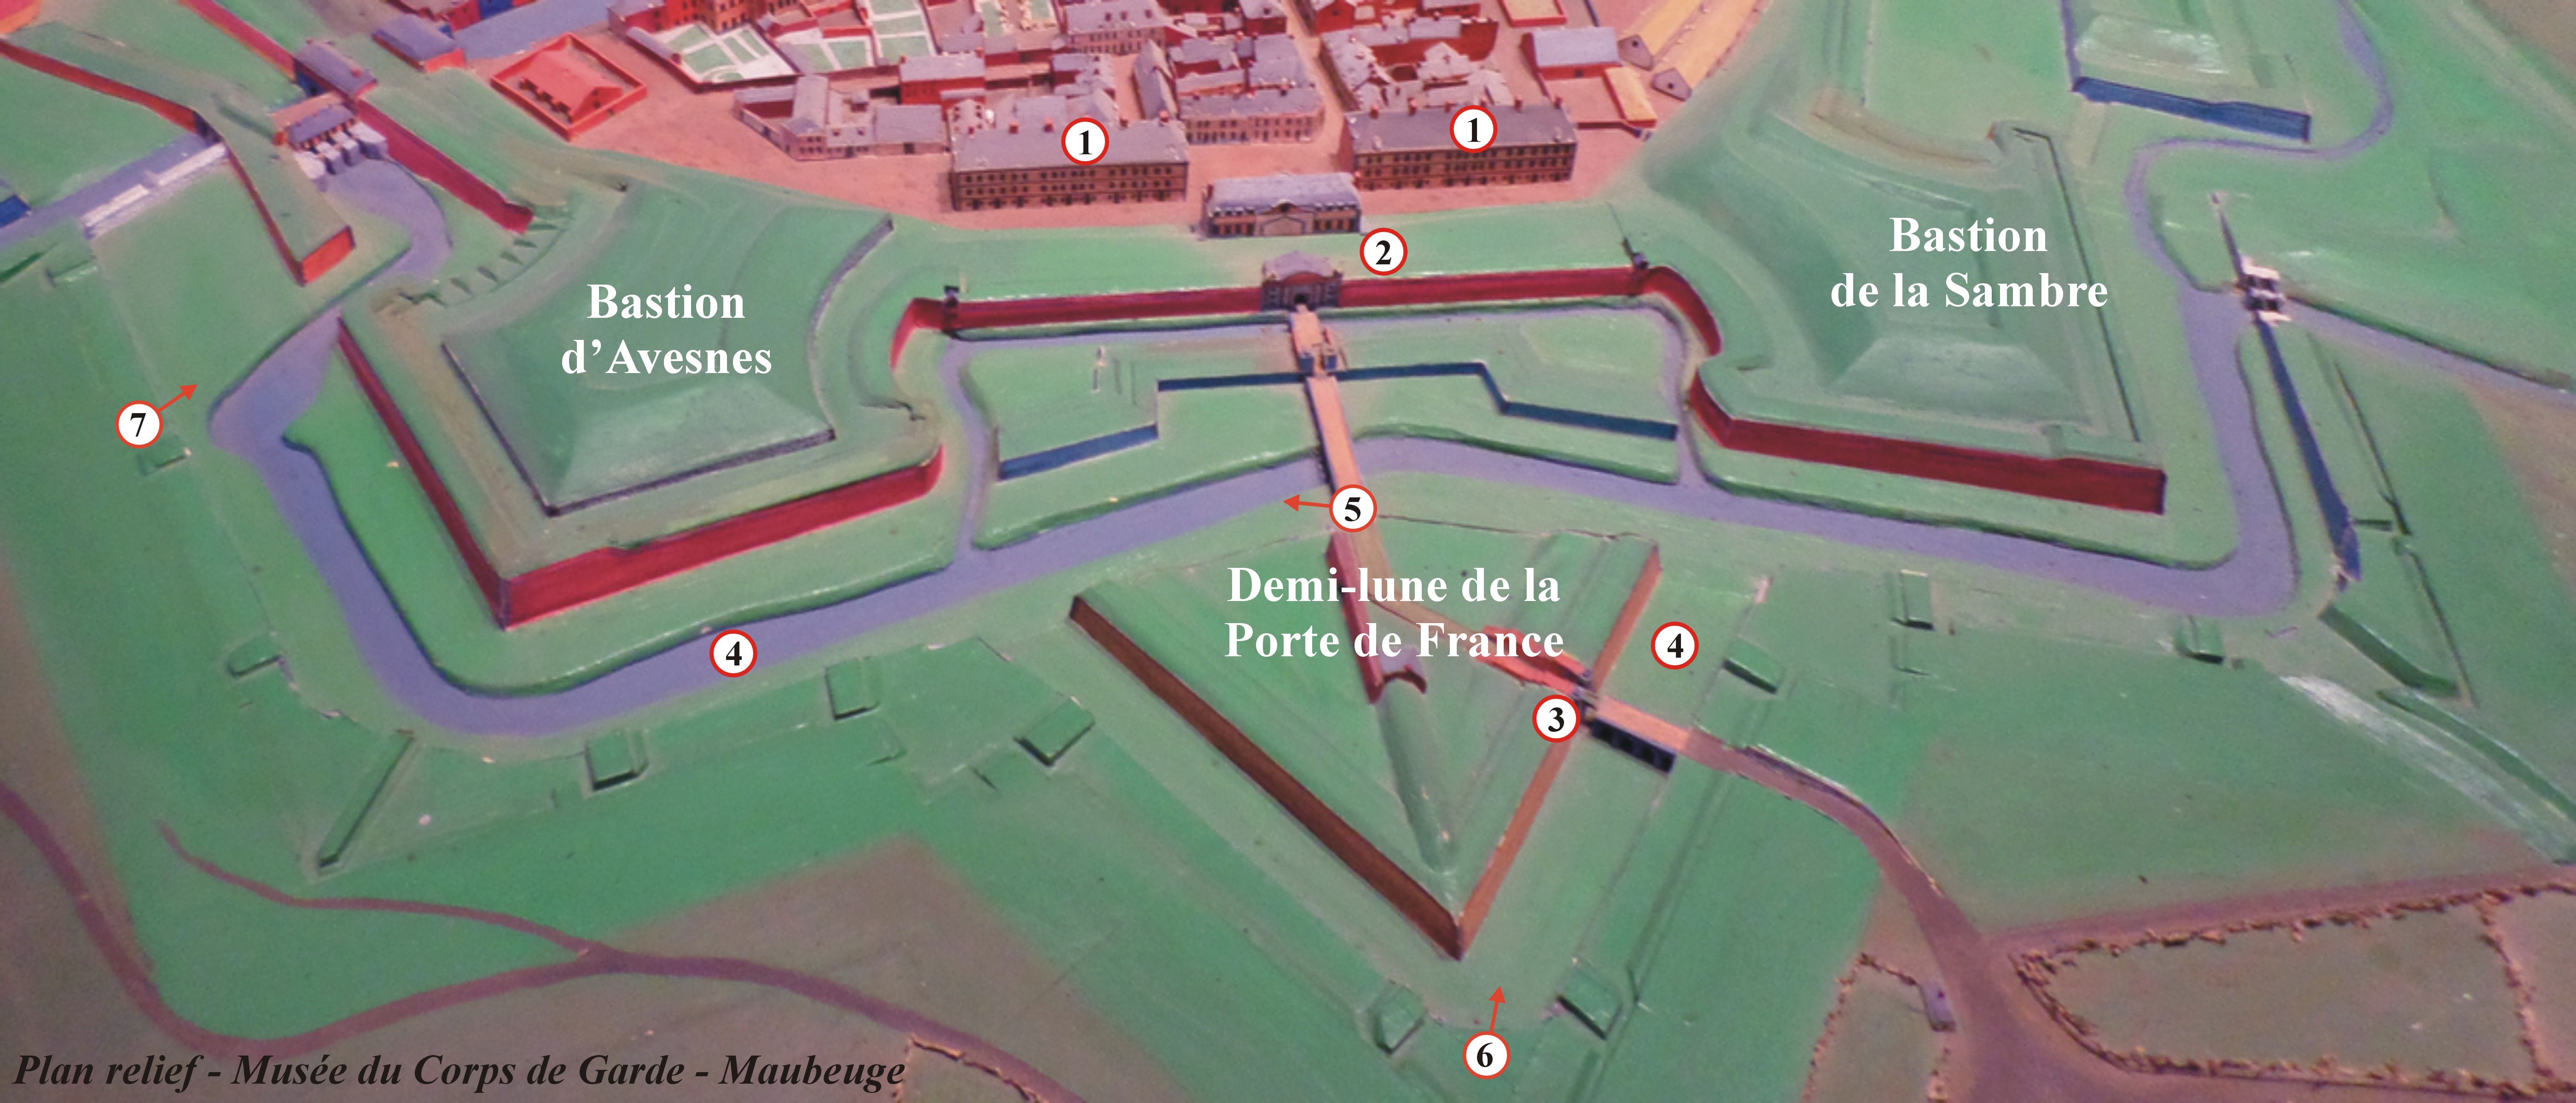 Remparts de Maubeuge, bastions d'Avesnes et de la Sambre, porte de France.